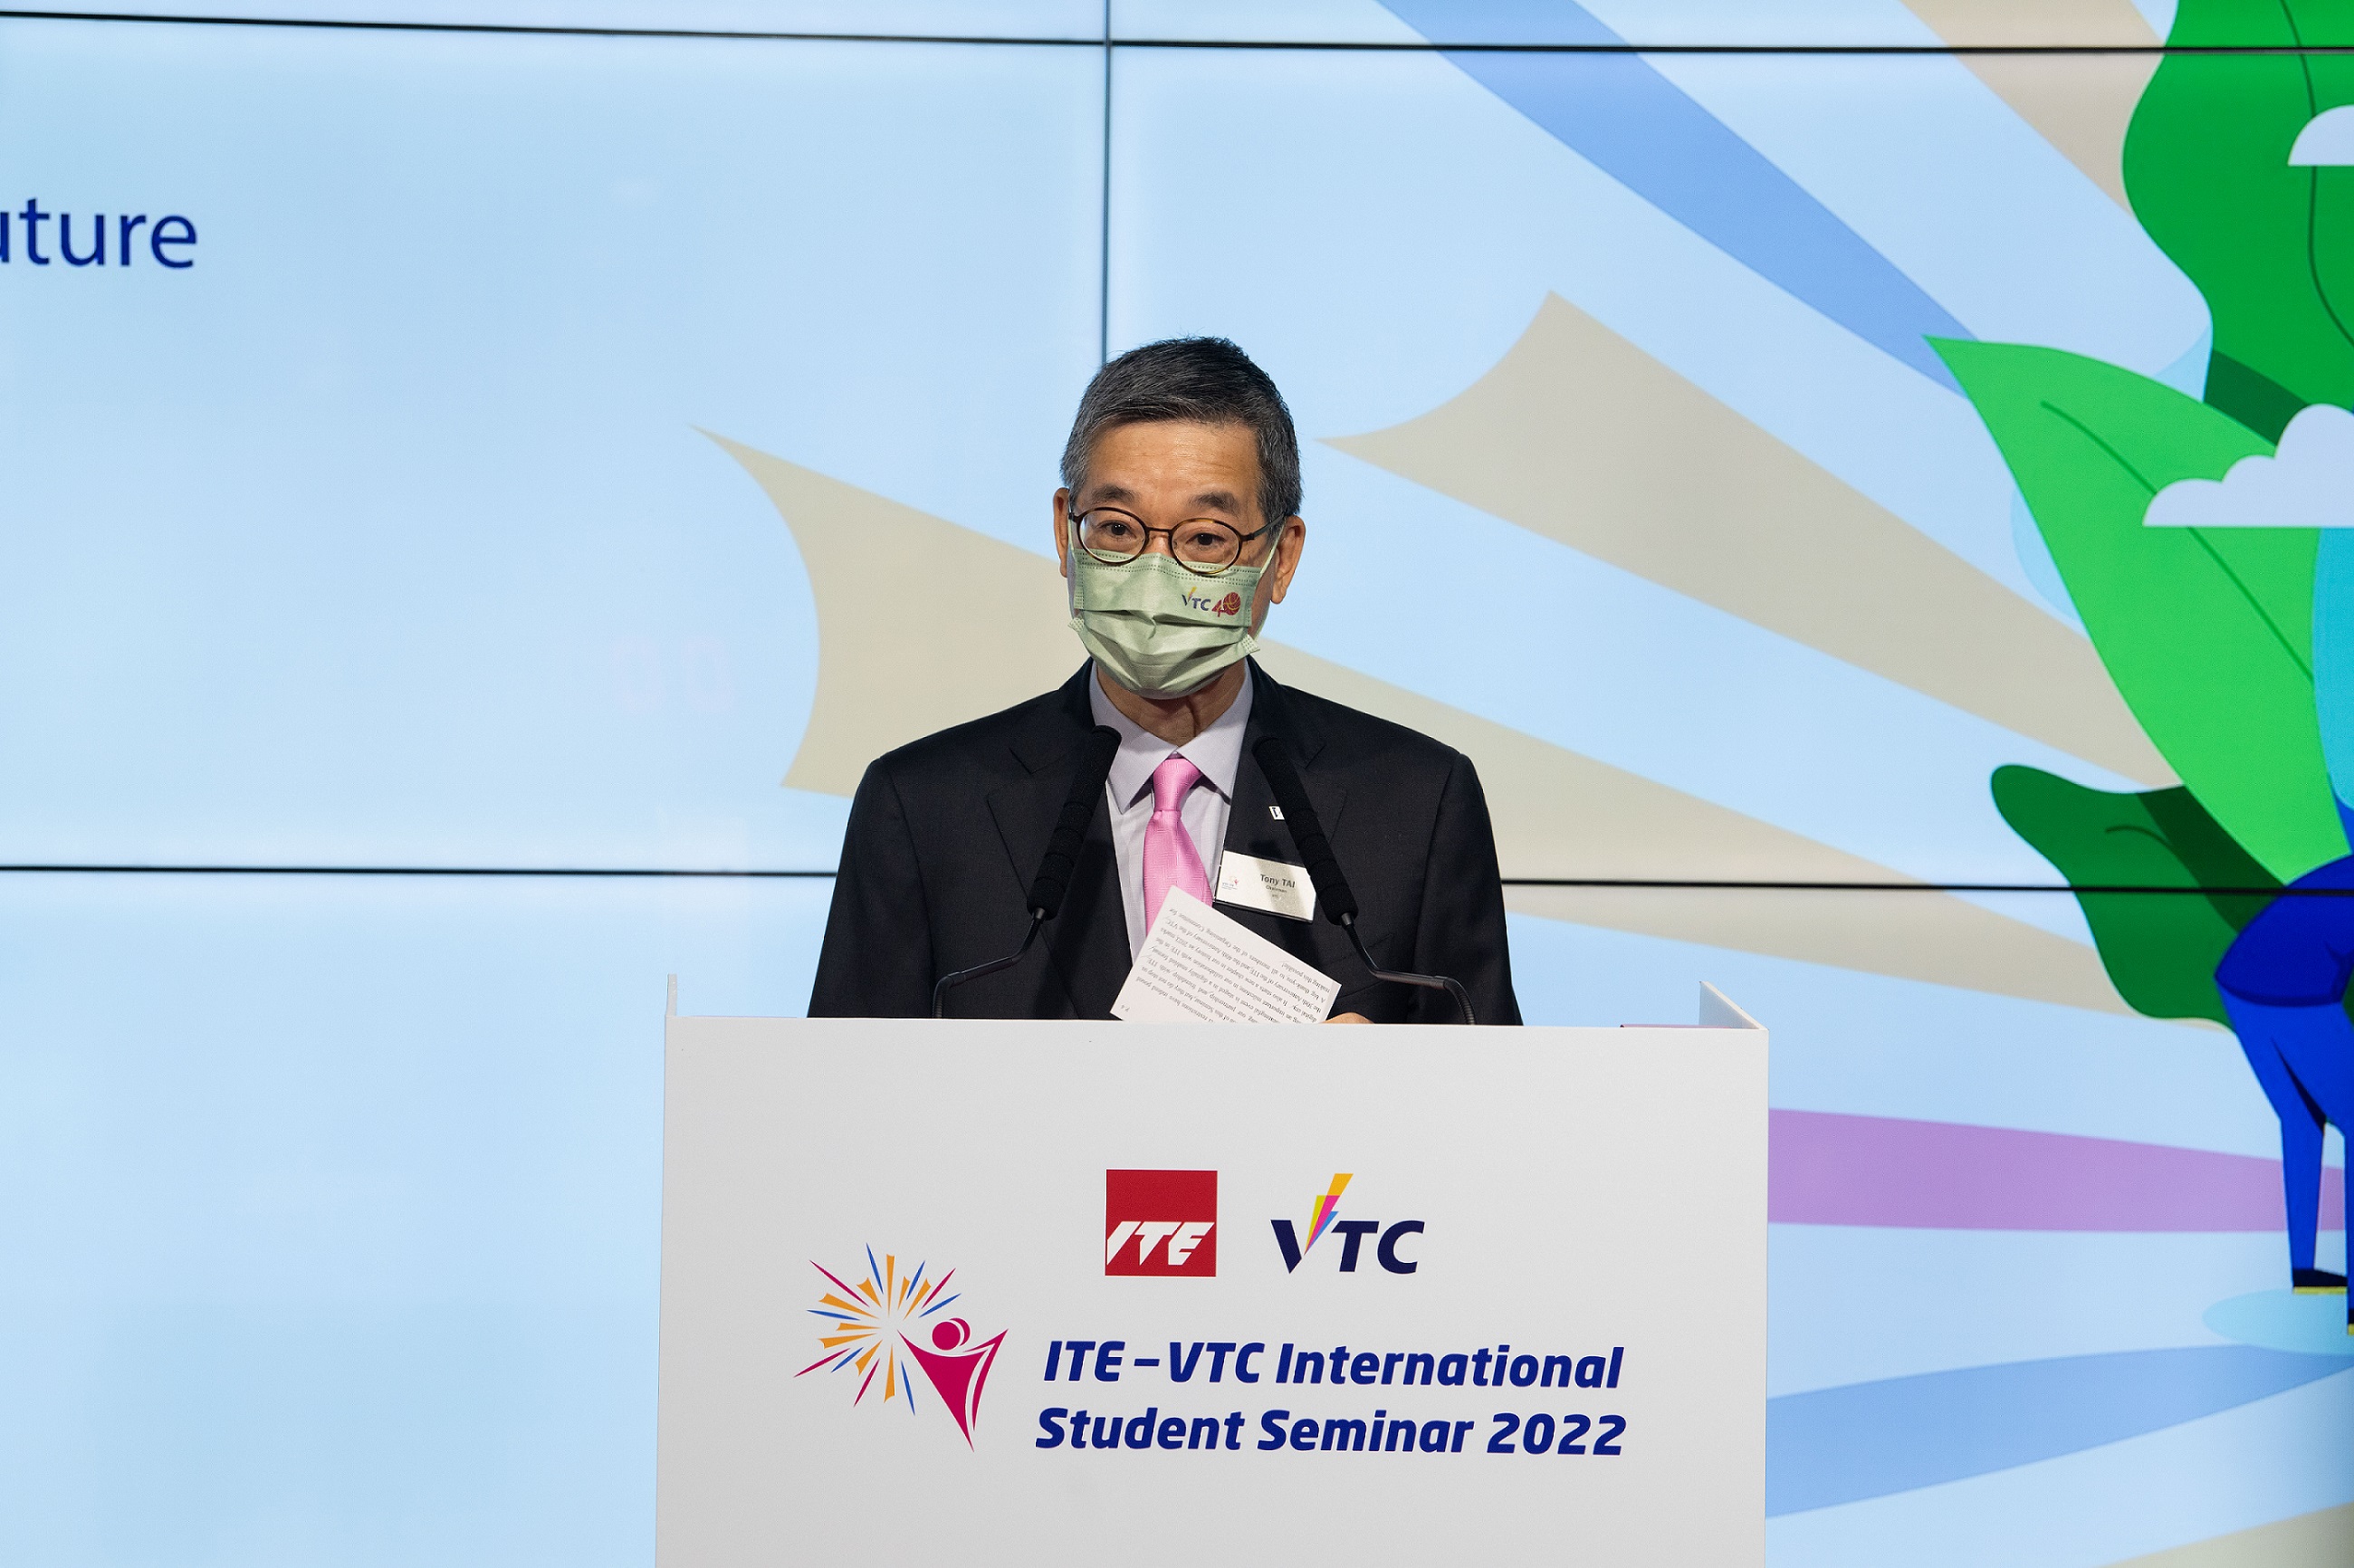 VTC主席戴澤棠致歡迎辭時表示，研討會旨在協助年輕一代掌握新知識及技能，致力共創一個共融、靈活及可持續發展的未來